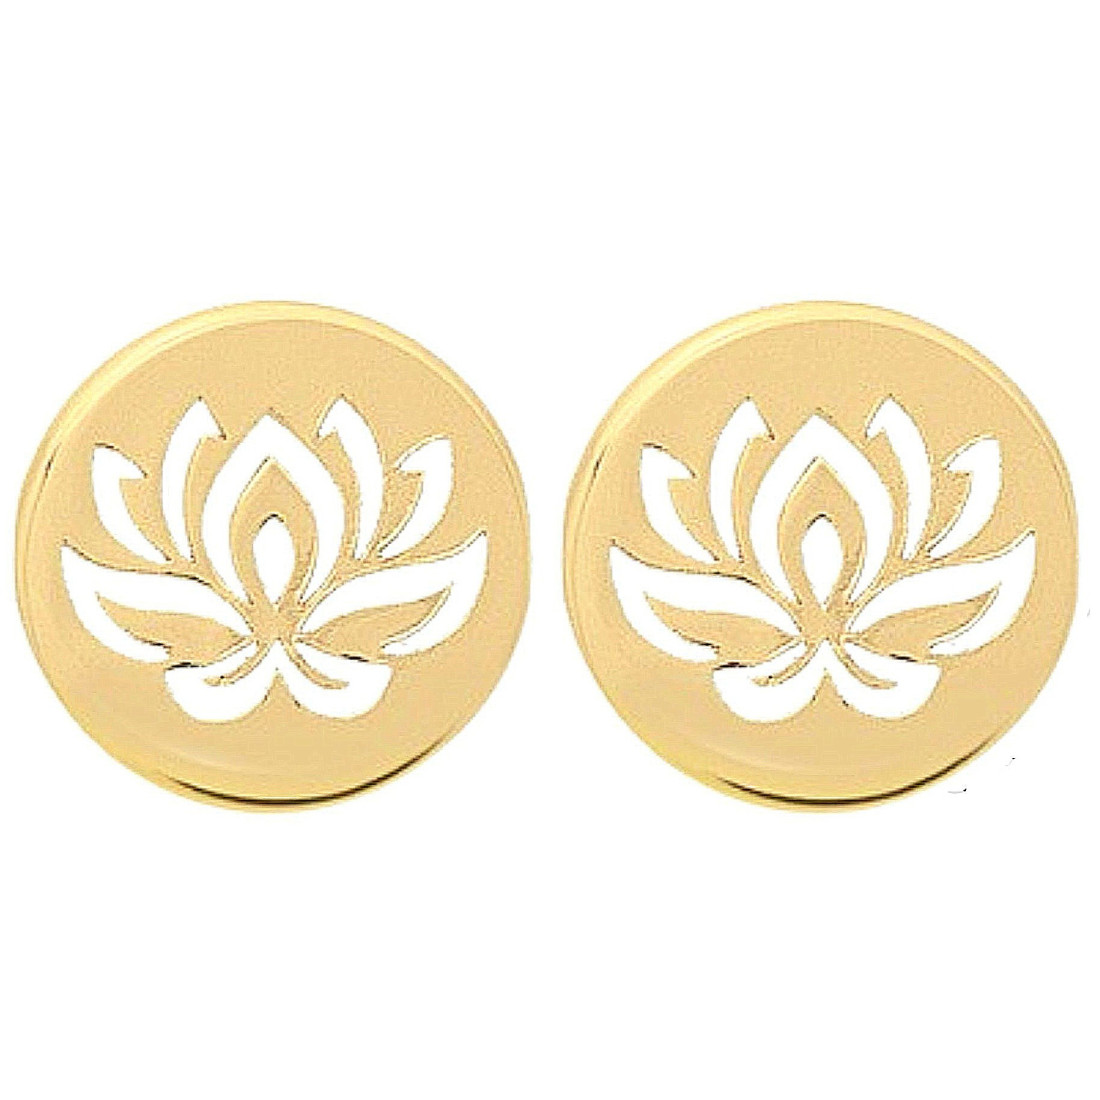 Boucles d'oreilles femme enfant médaille fleur de lotus en plaqué or